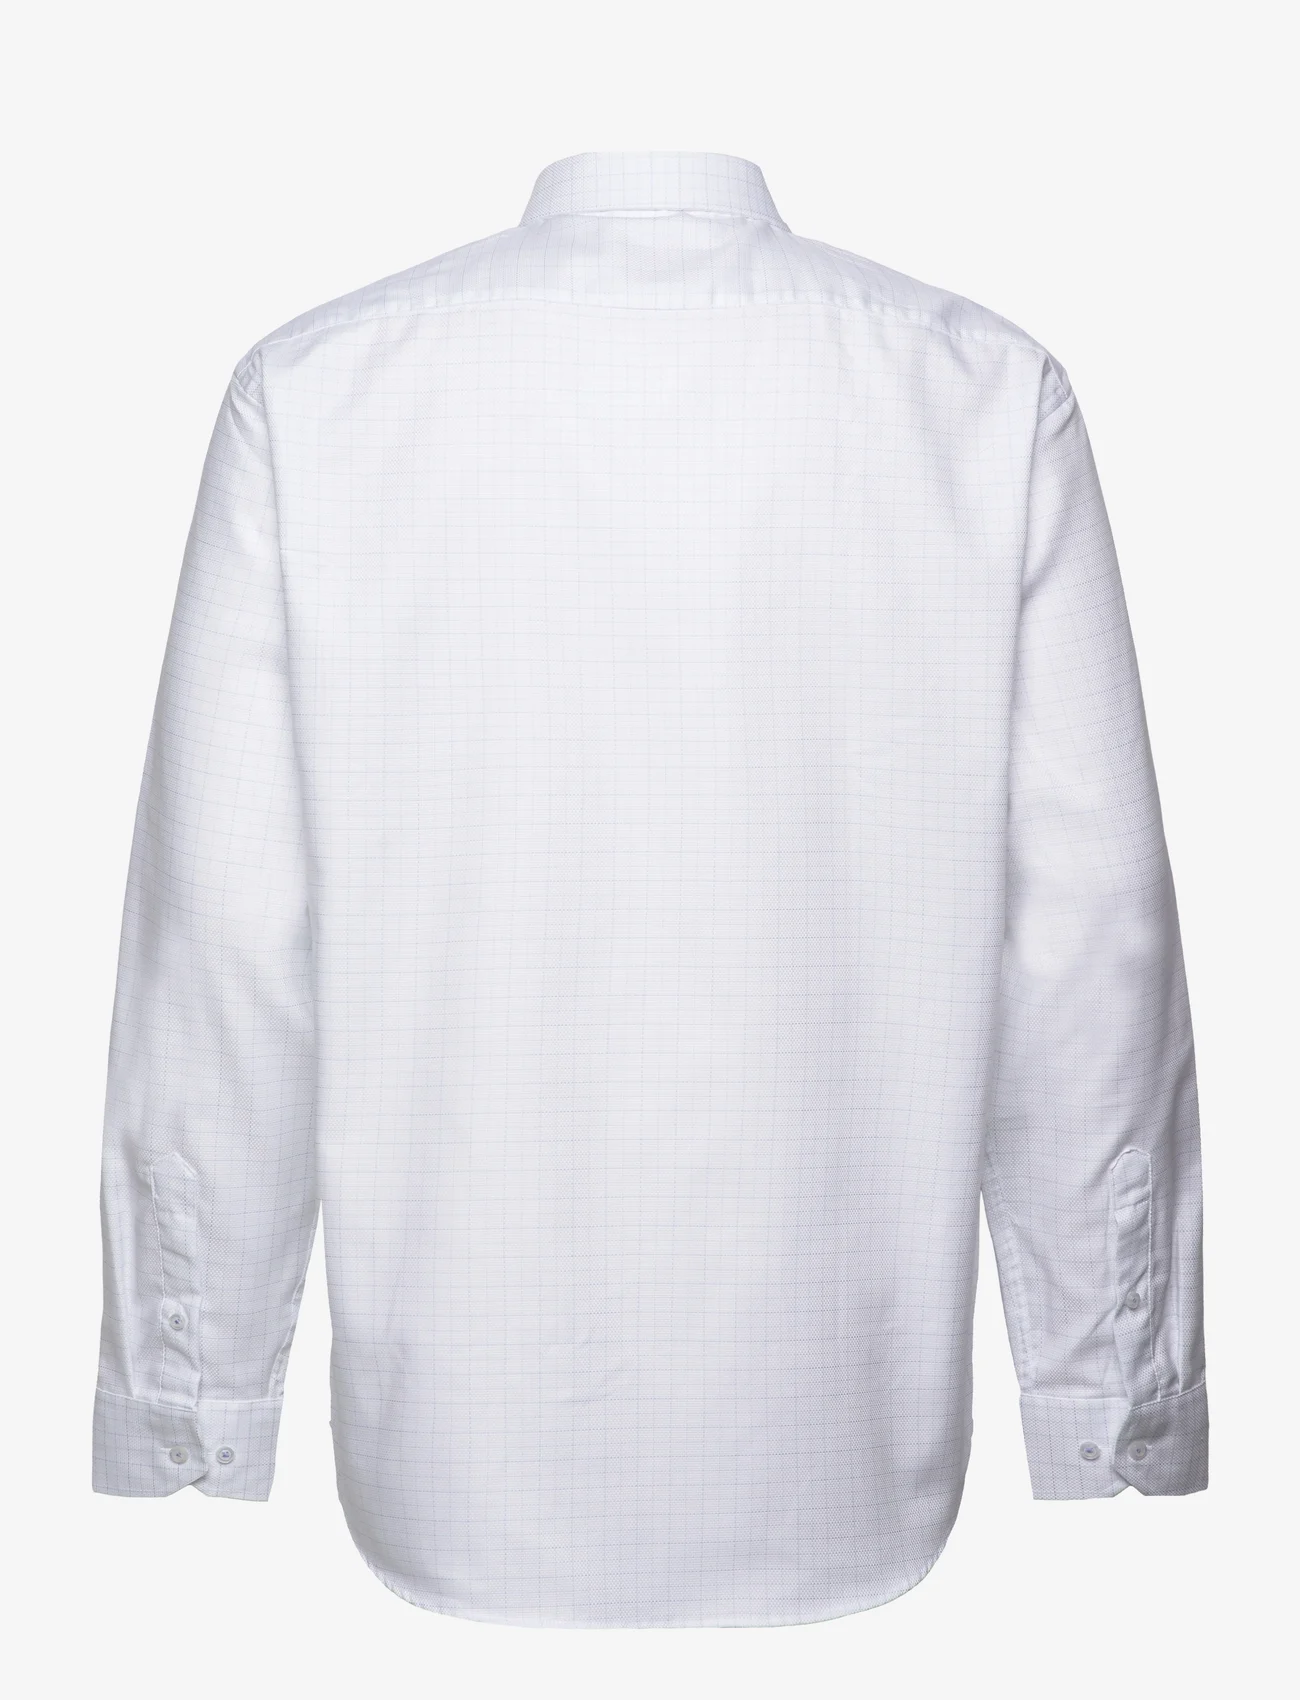 Seven Seas Copenhagen - Dallas - 23005 - laisvalaikio marškiniai - white - 1